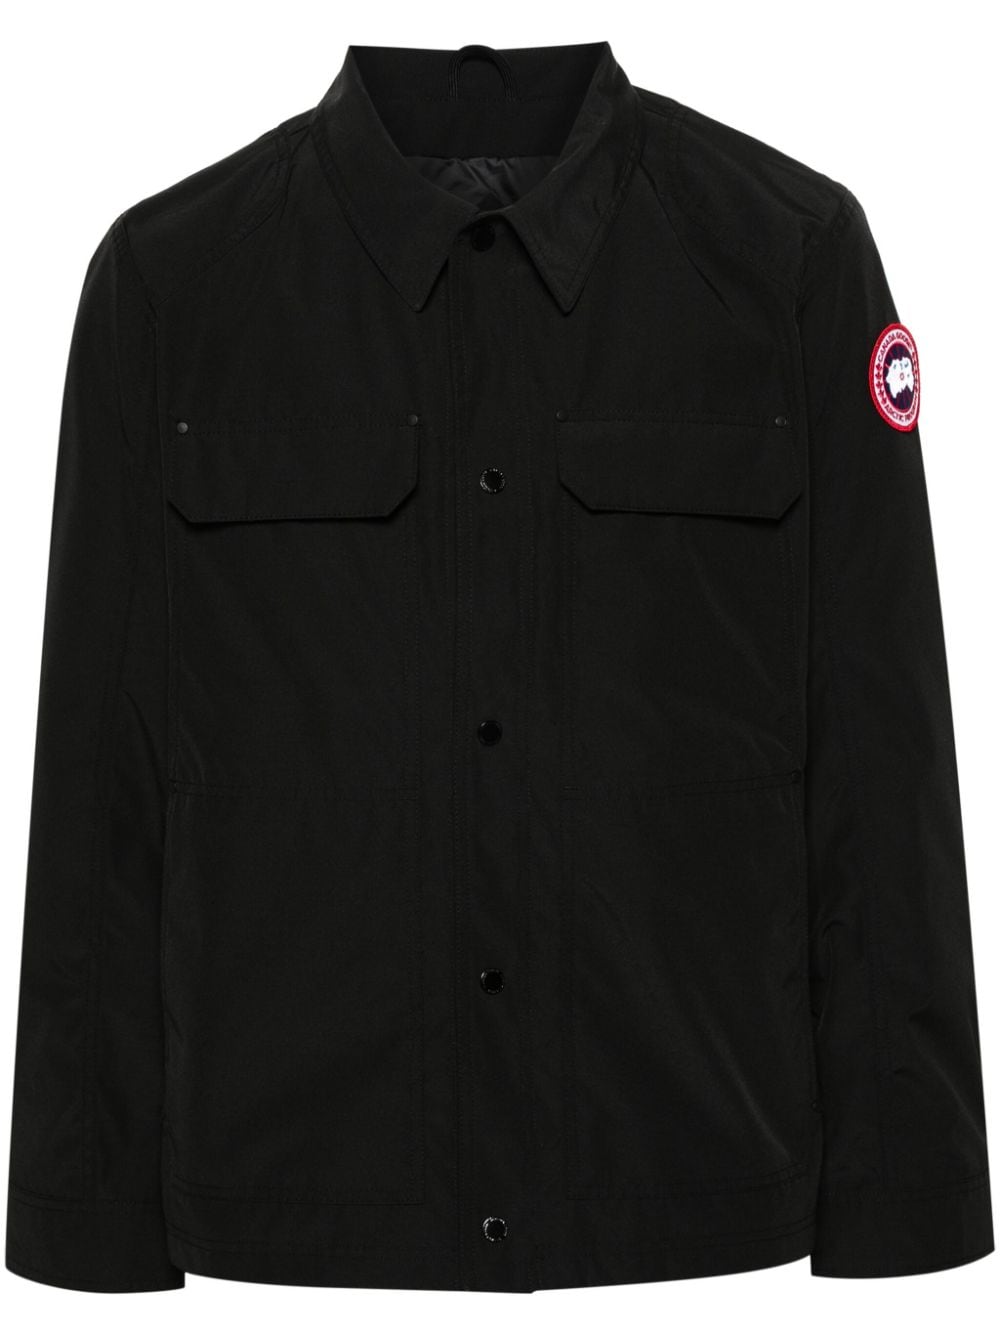 男士黑色夹克衫，带有徽章和经典领口